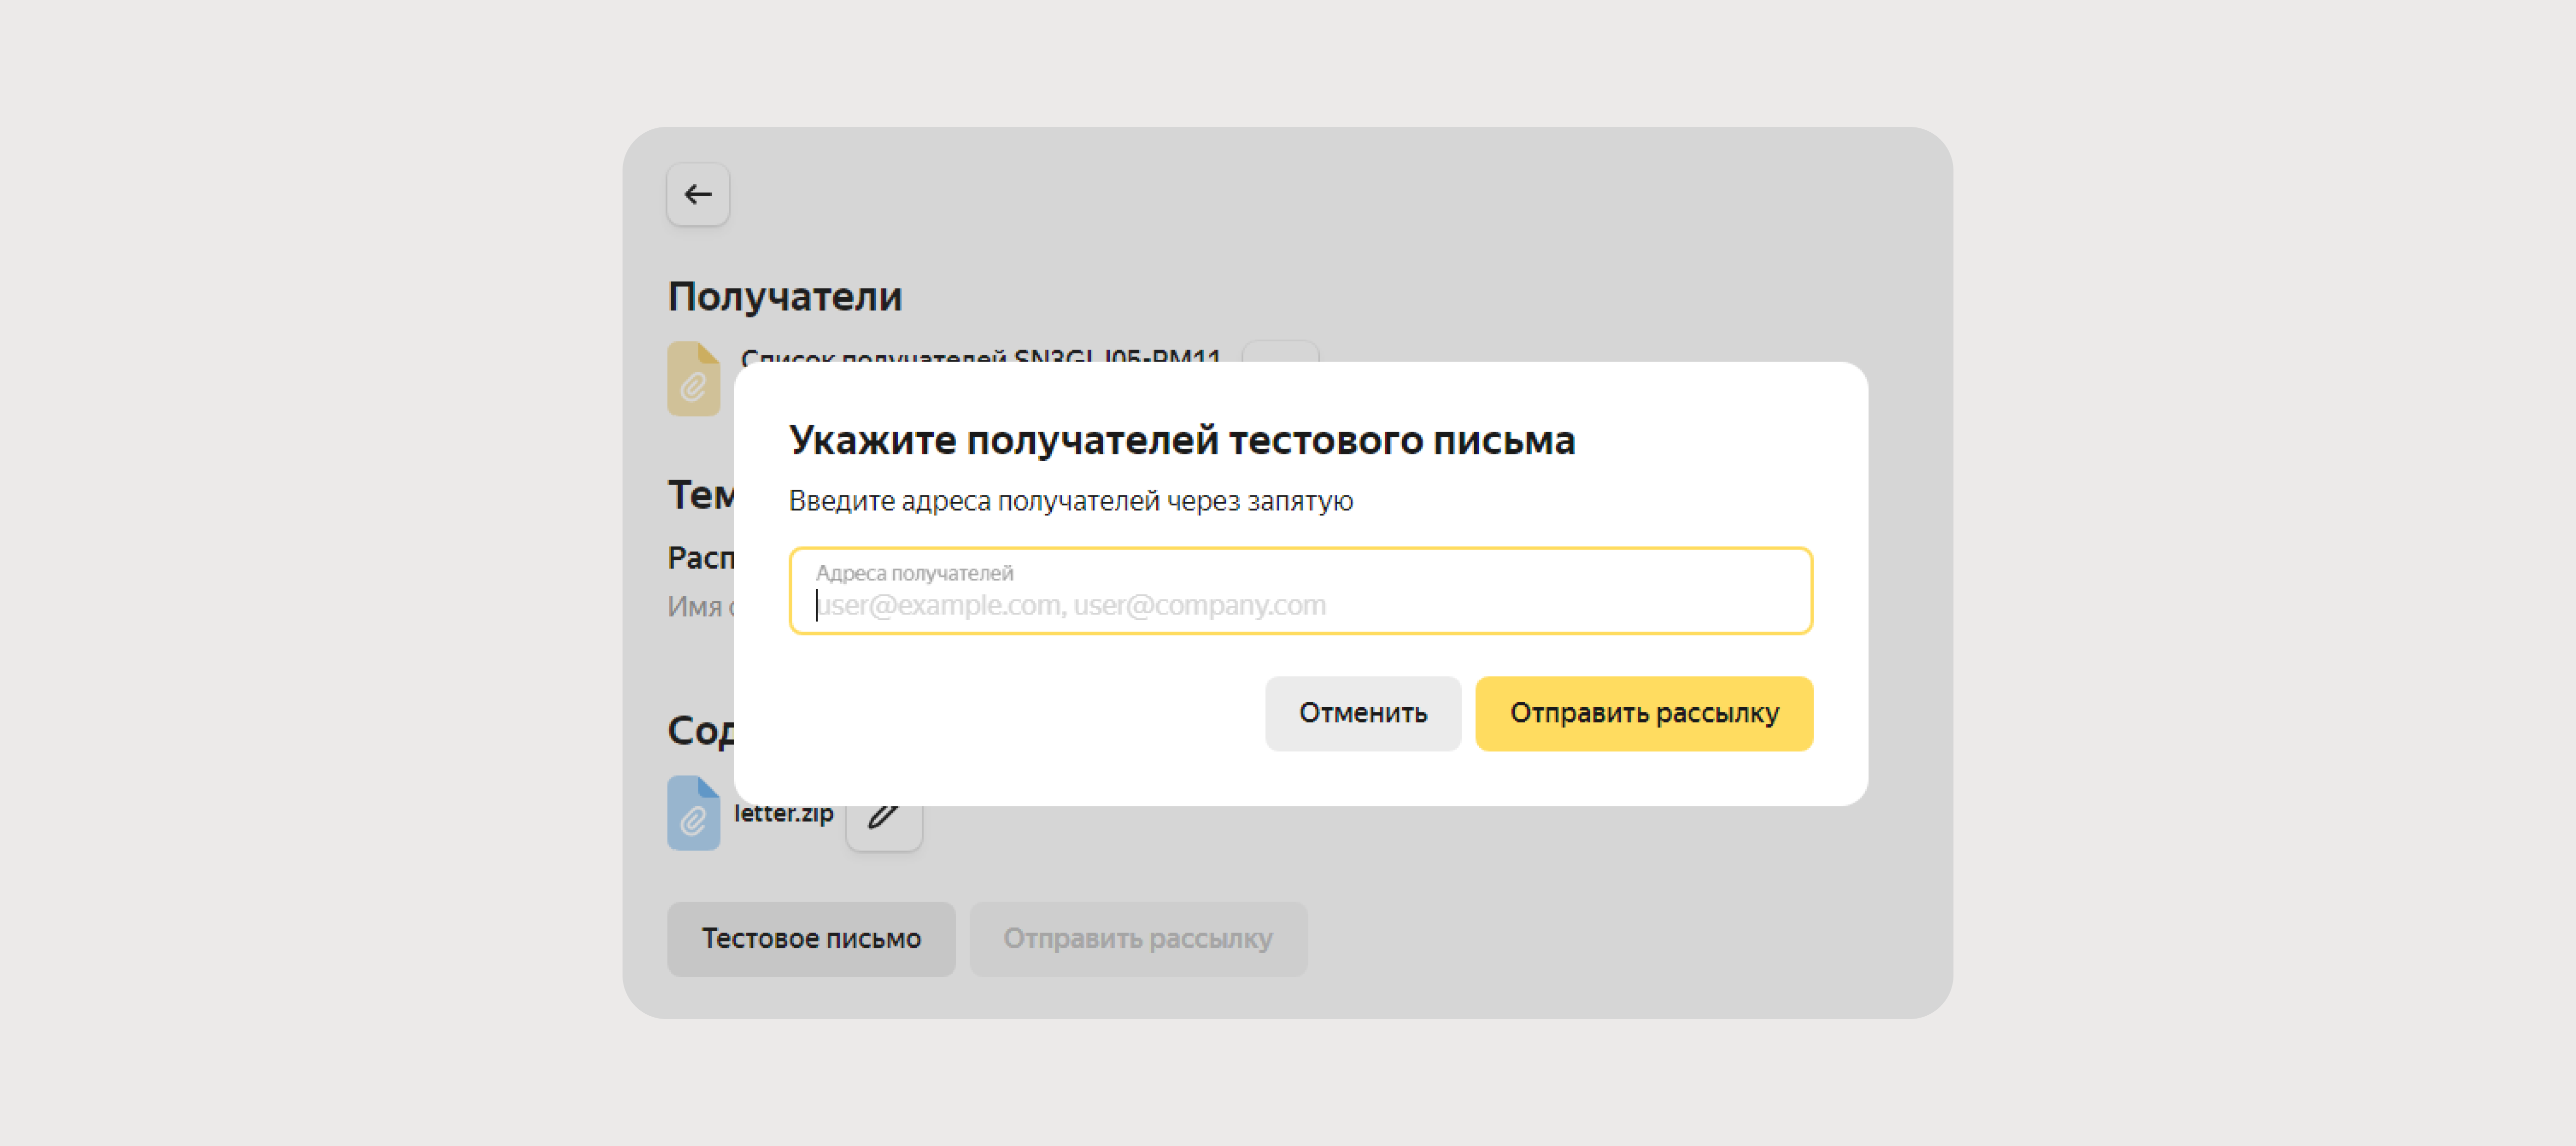 Как сделать массовую рассылку писем в Яндекс Почте: подробное руководство